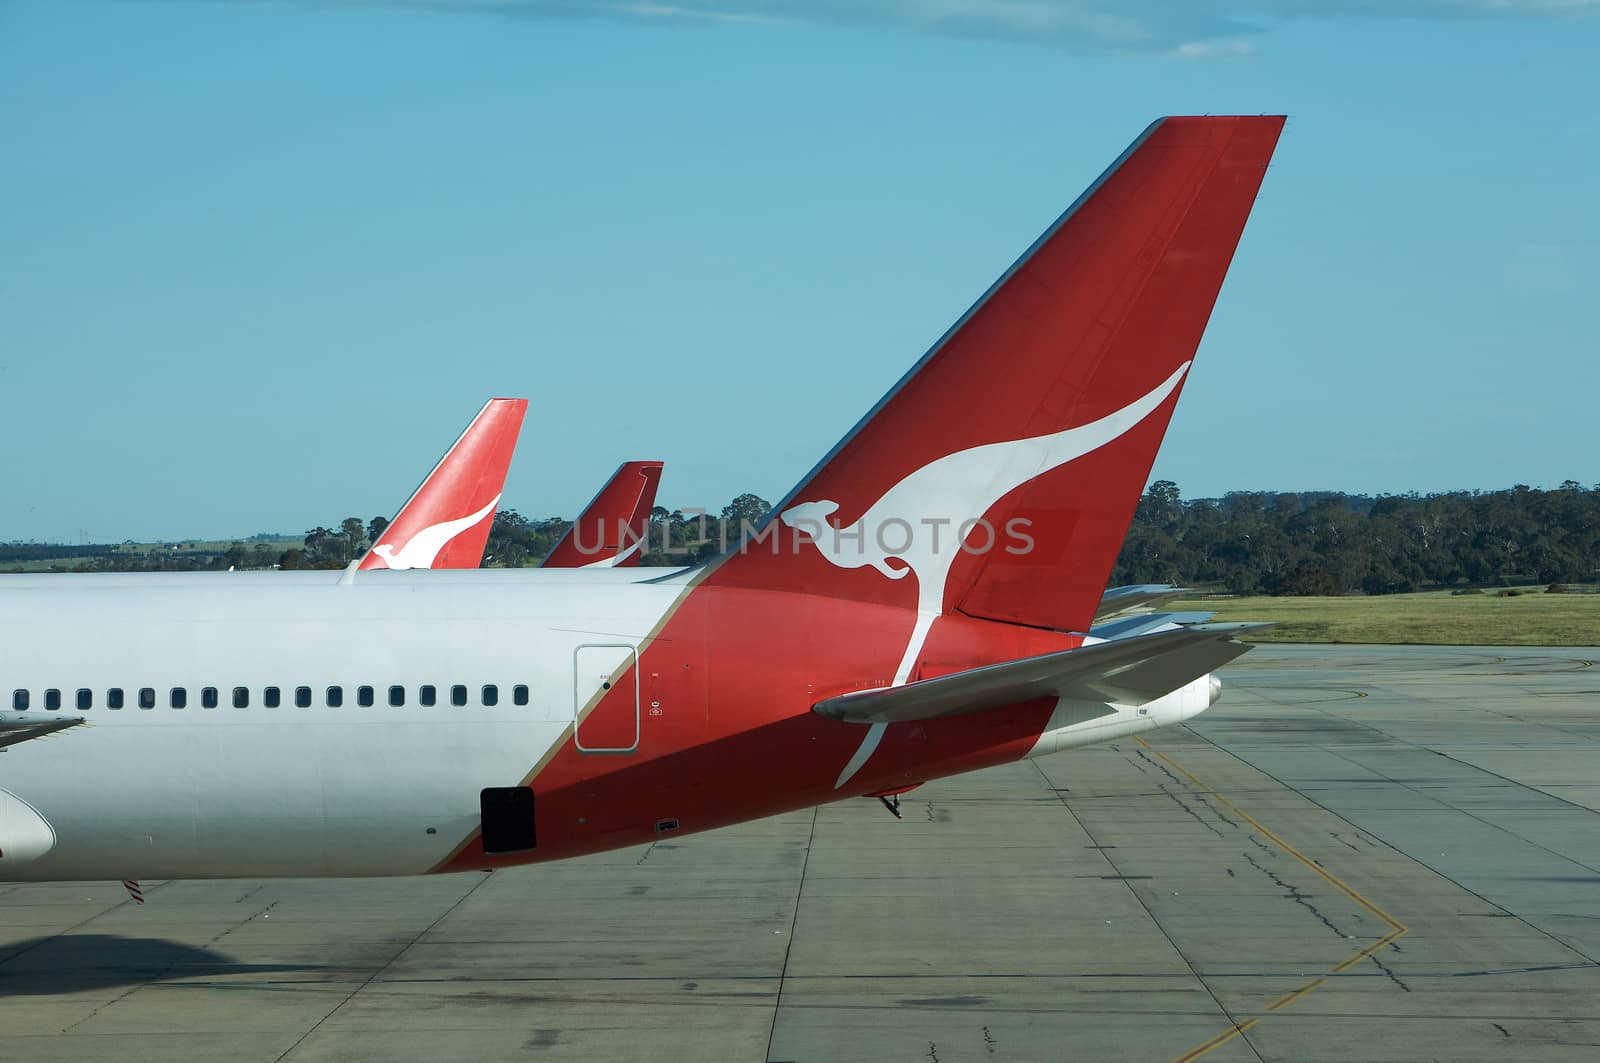 Flight of the Quantas Airbus 380 From Melbourne Australia Airport Plane